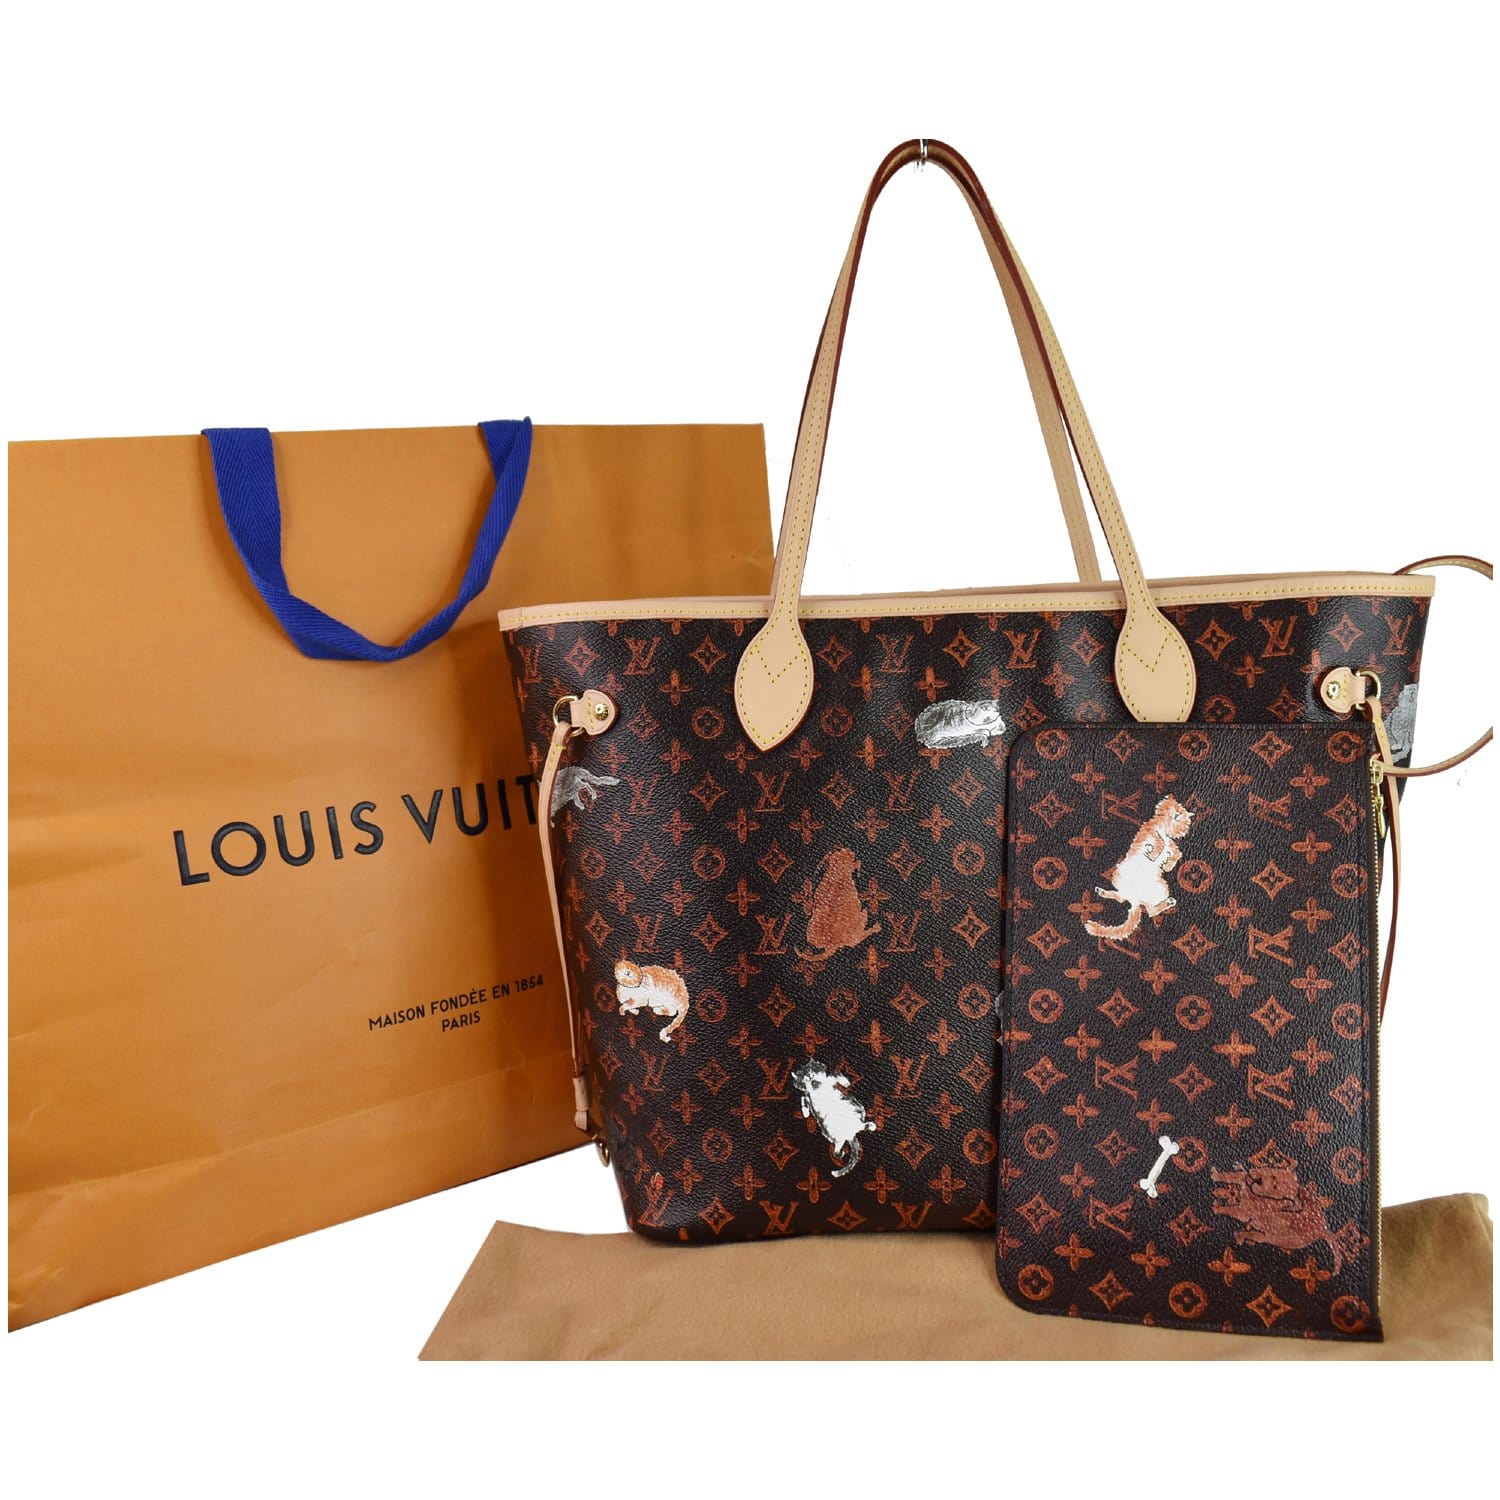 LOUIS VUITTON Monogram Neverfull MM Shoulder Bag Handbag Medium Tote Bag